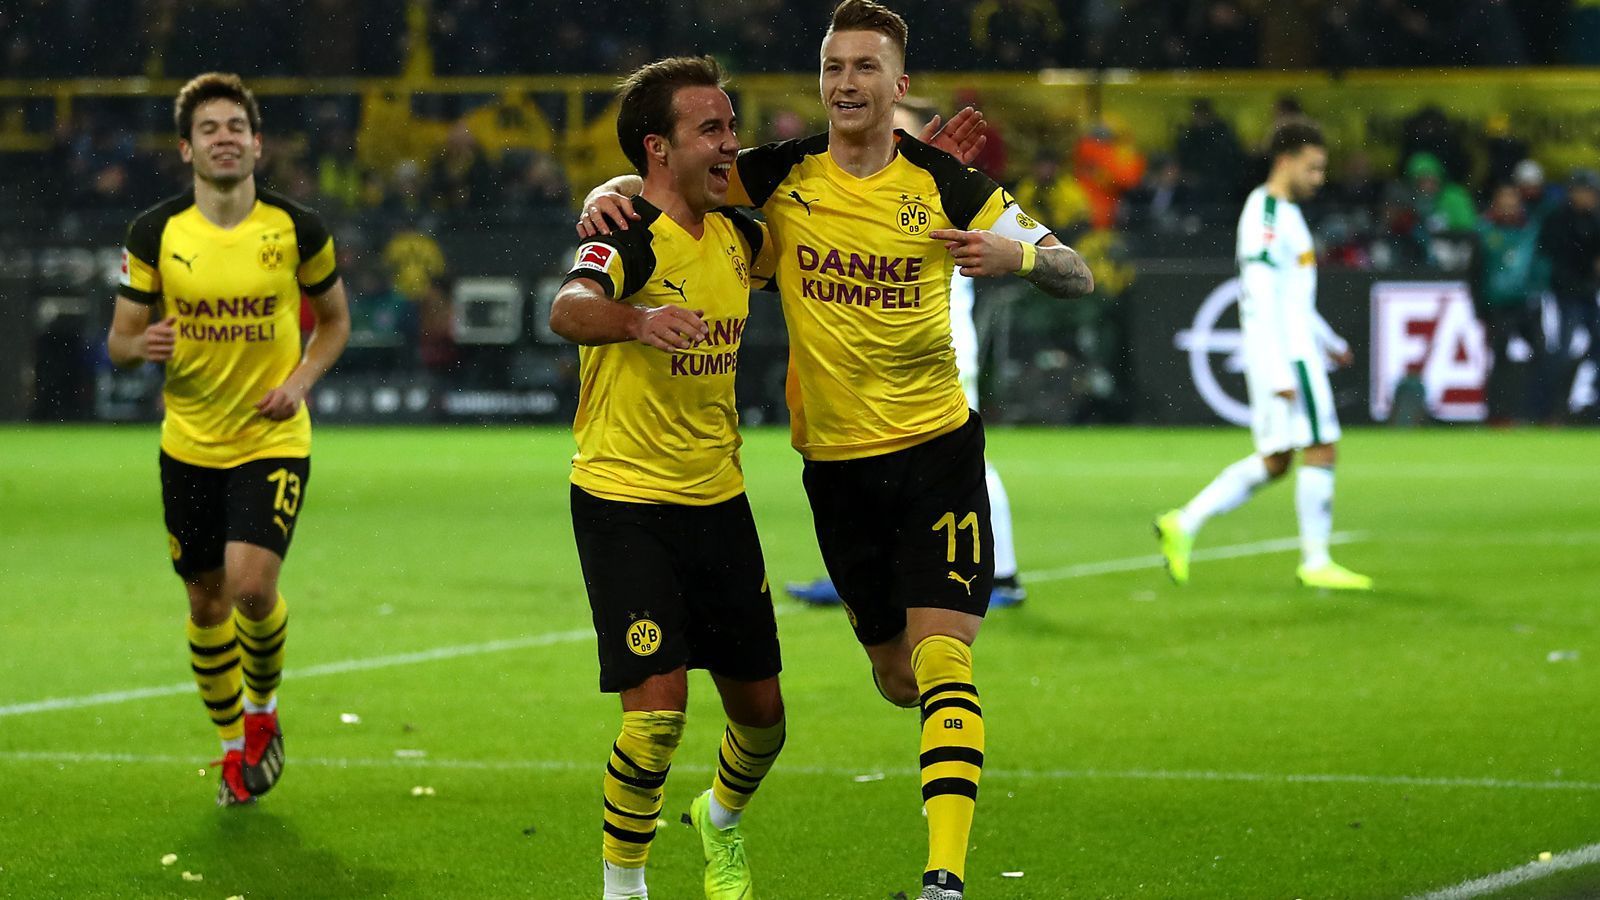 
                <strong>Einzelkritik: Borussia Dortmund - Borussia Mönchengladbach</strong><br>
                Borussia Dortmund setzt sich im Spitzenspiel gegen Borussia Mönchengladbach letztendlich verdient mit 2:1 durch und distanziert die Fohlen somit in der Tabelle. ran.de präsentiert die Noten zum Spiel in der Einzelkritik.
              